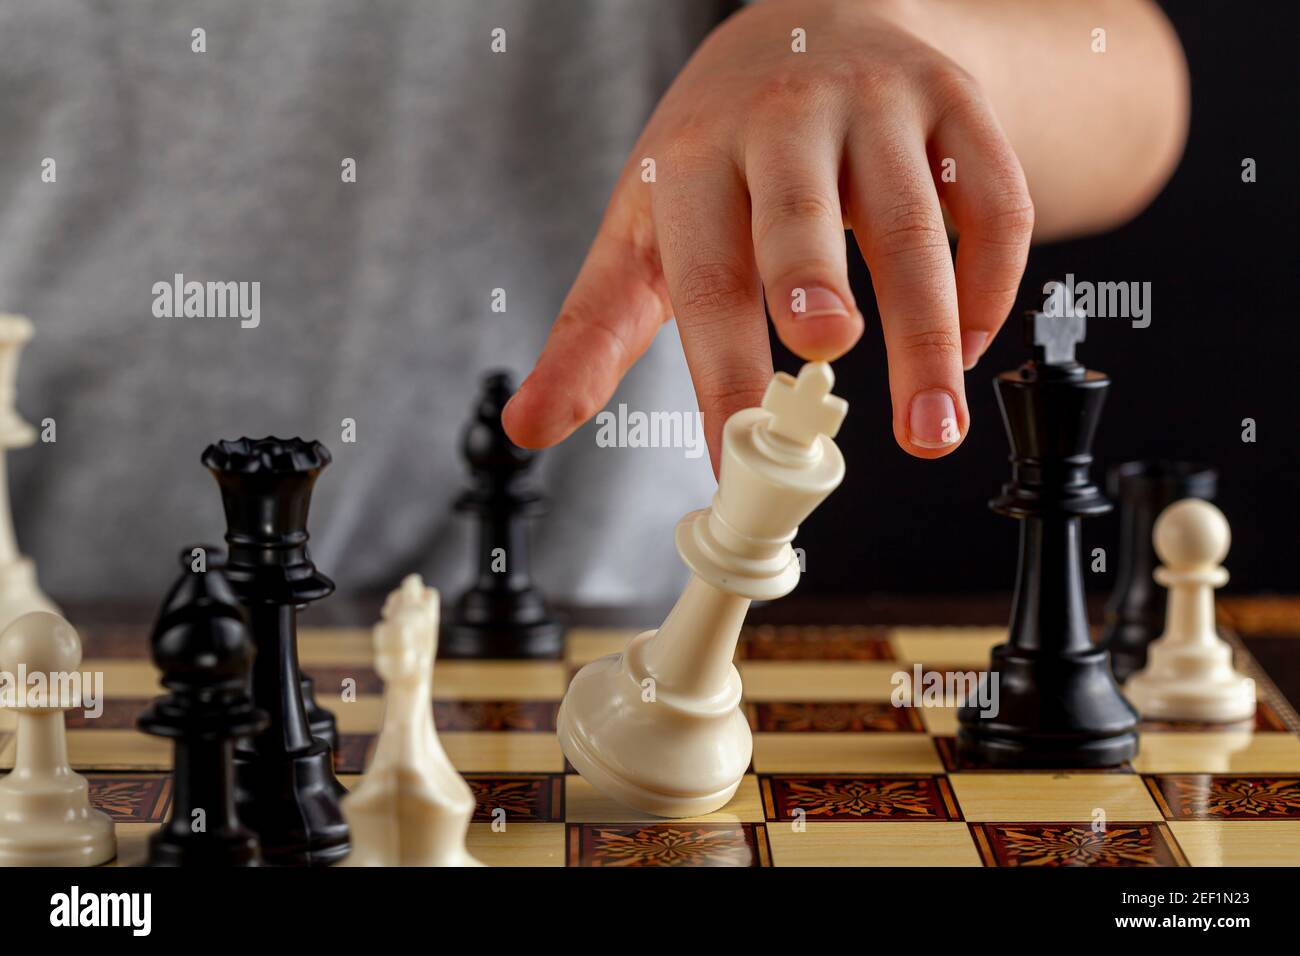 Gros plan de la fin d'un jeu d'échecs où le joueur perdant démissionne en renverse son roi. L'image montre que le roi tombe. Imag. Polyvalente Banque D'Images